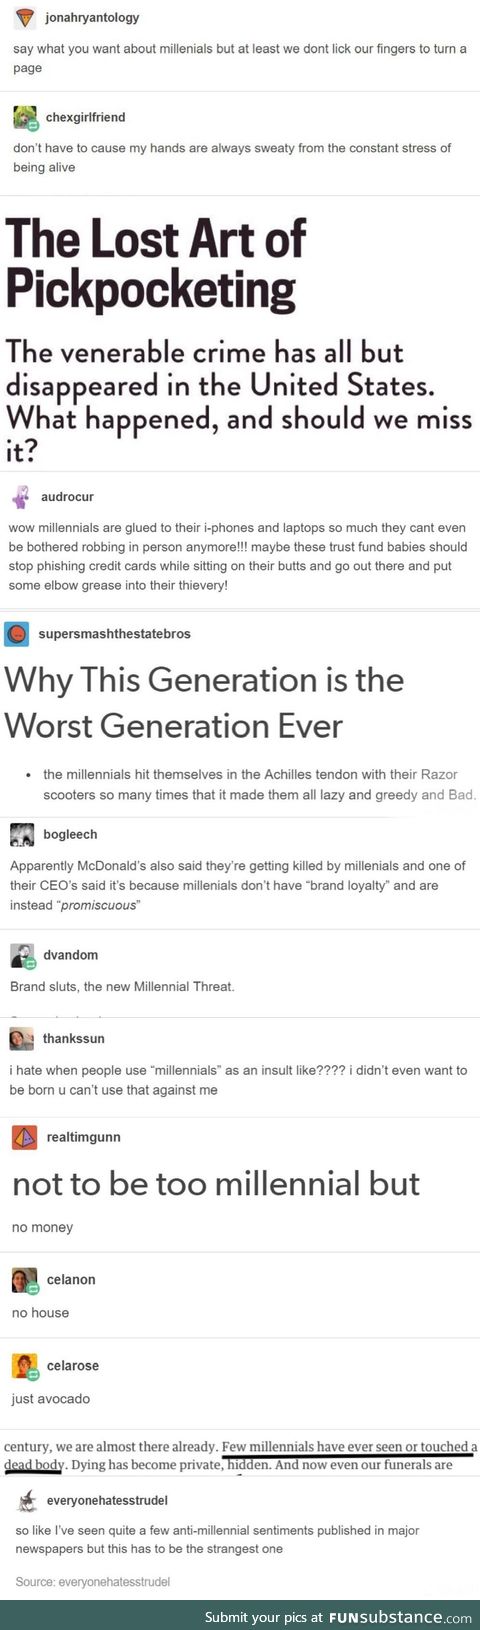 millennials do the darndest things